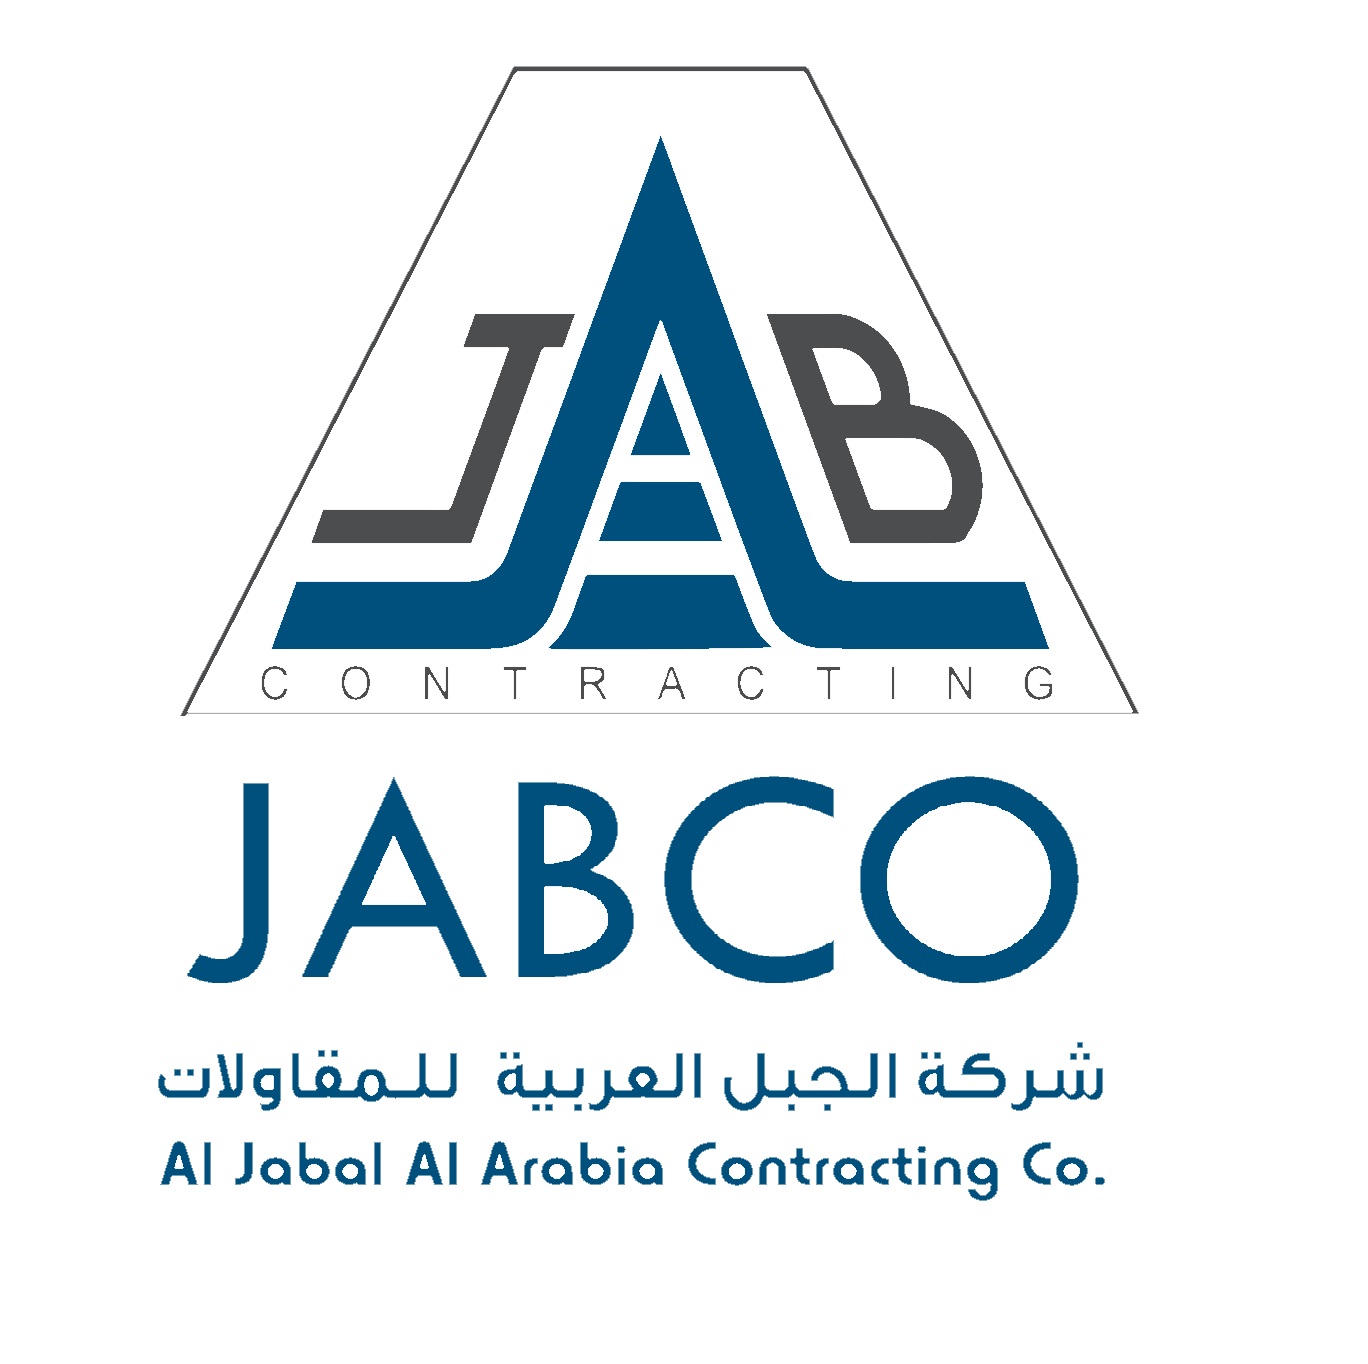 Al Jabal Al Arabia Contracting